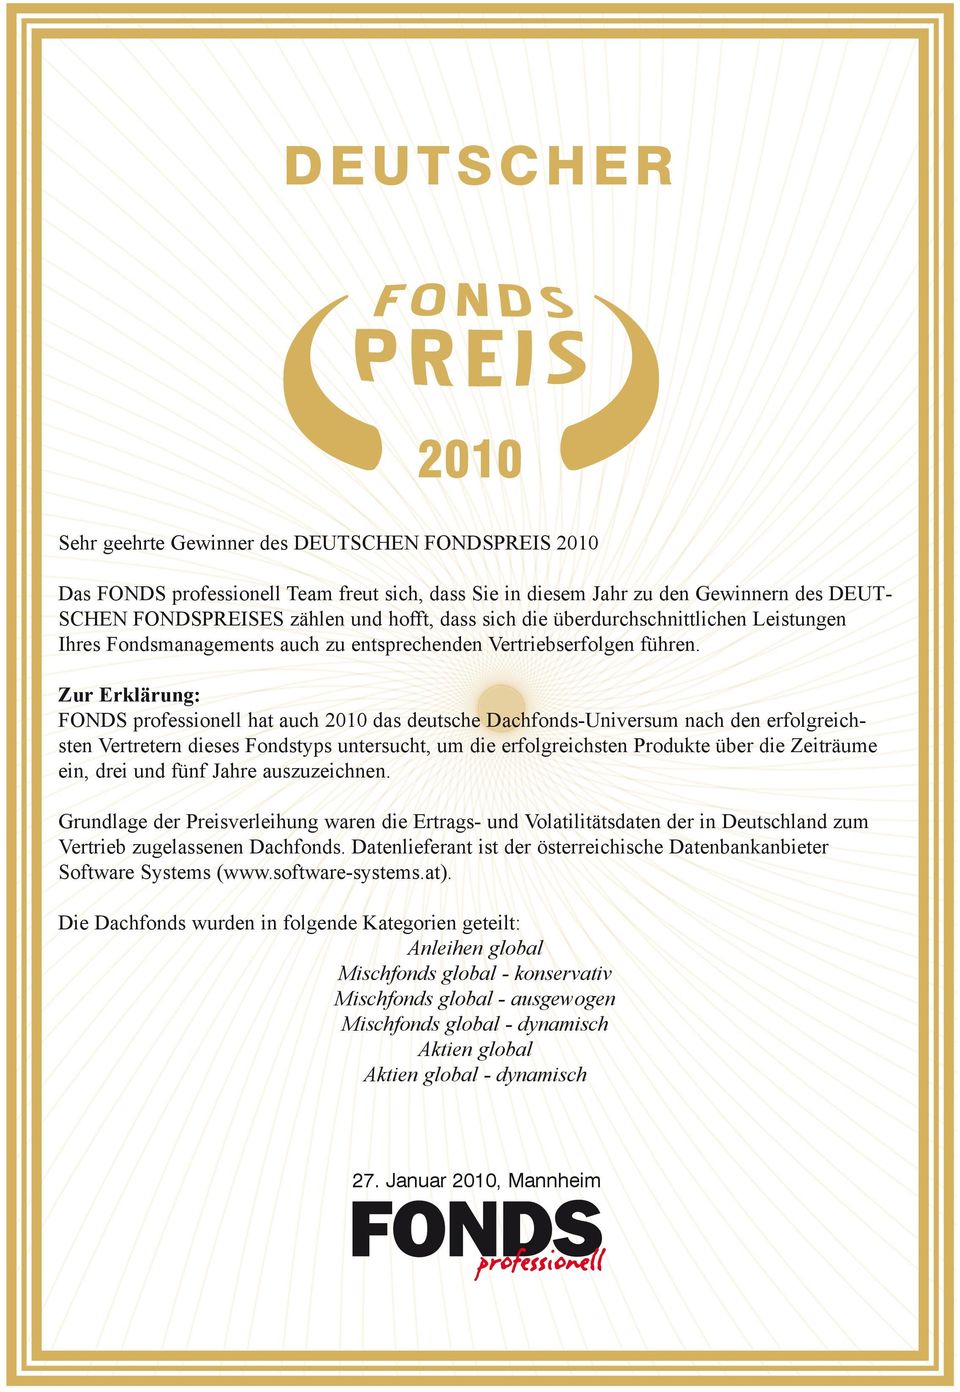 Zur Erklärung: FONDS professionell hat auch 2010 das deutsche Dachfonds-Universum nach den erfolgreichsten Vertretern dieses Fondstyps untersucht, um die erfolgreichsten Produkte über die Zeiträume